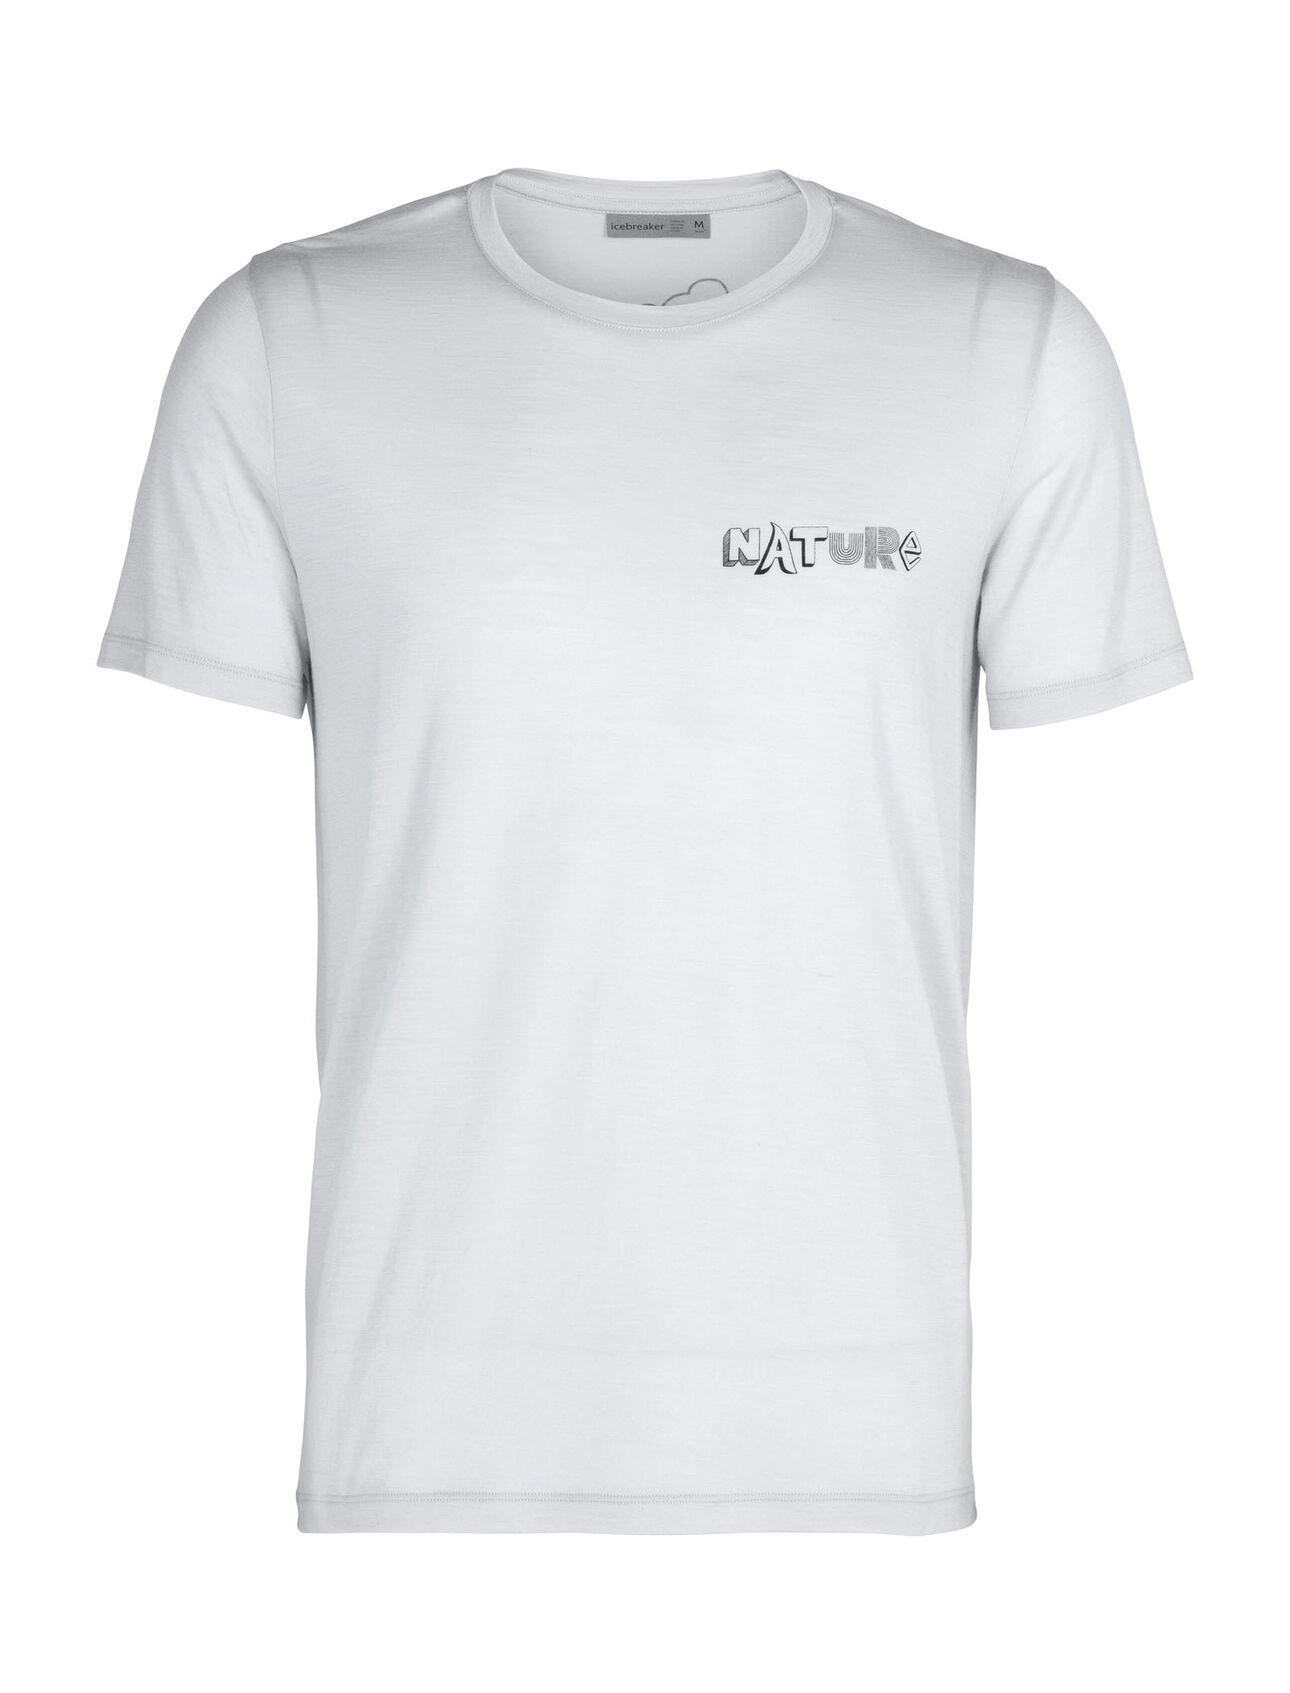 T-shirt in lana merino Tech Lite Short Sleeve Crewe Nature